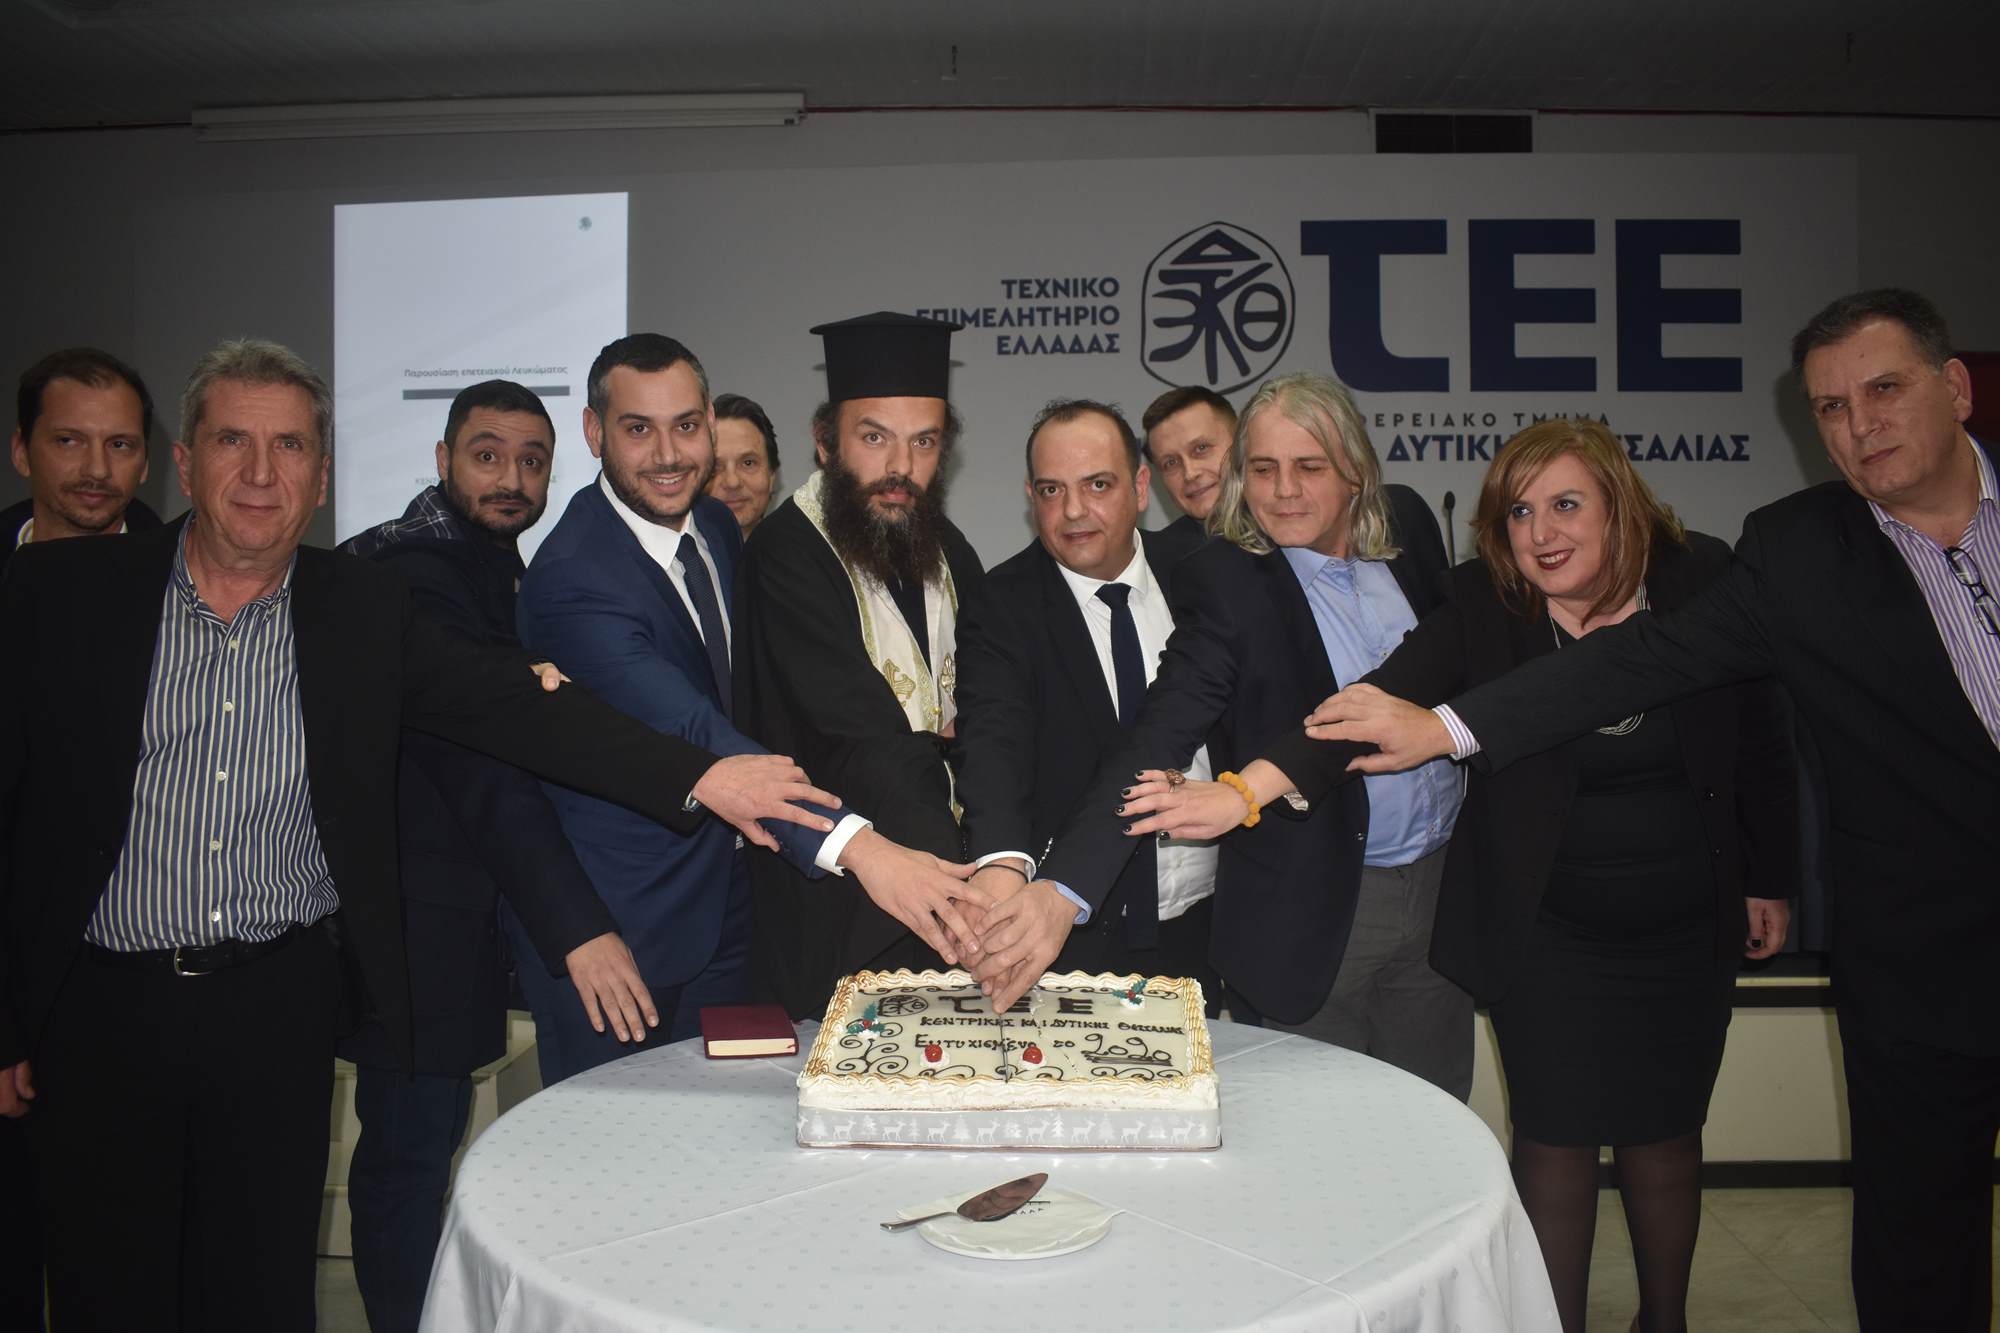 Έκοψε την πίτα του το ΤΕΕ στη Λάρισα - Παρουσιάστηκε λεύκωμα για τα 70 χρόνια ιστορίας του (φωτο)